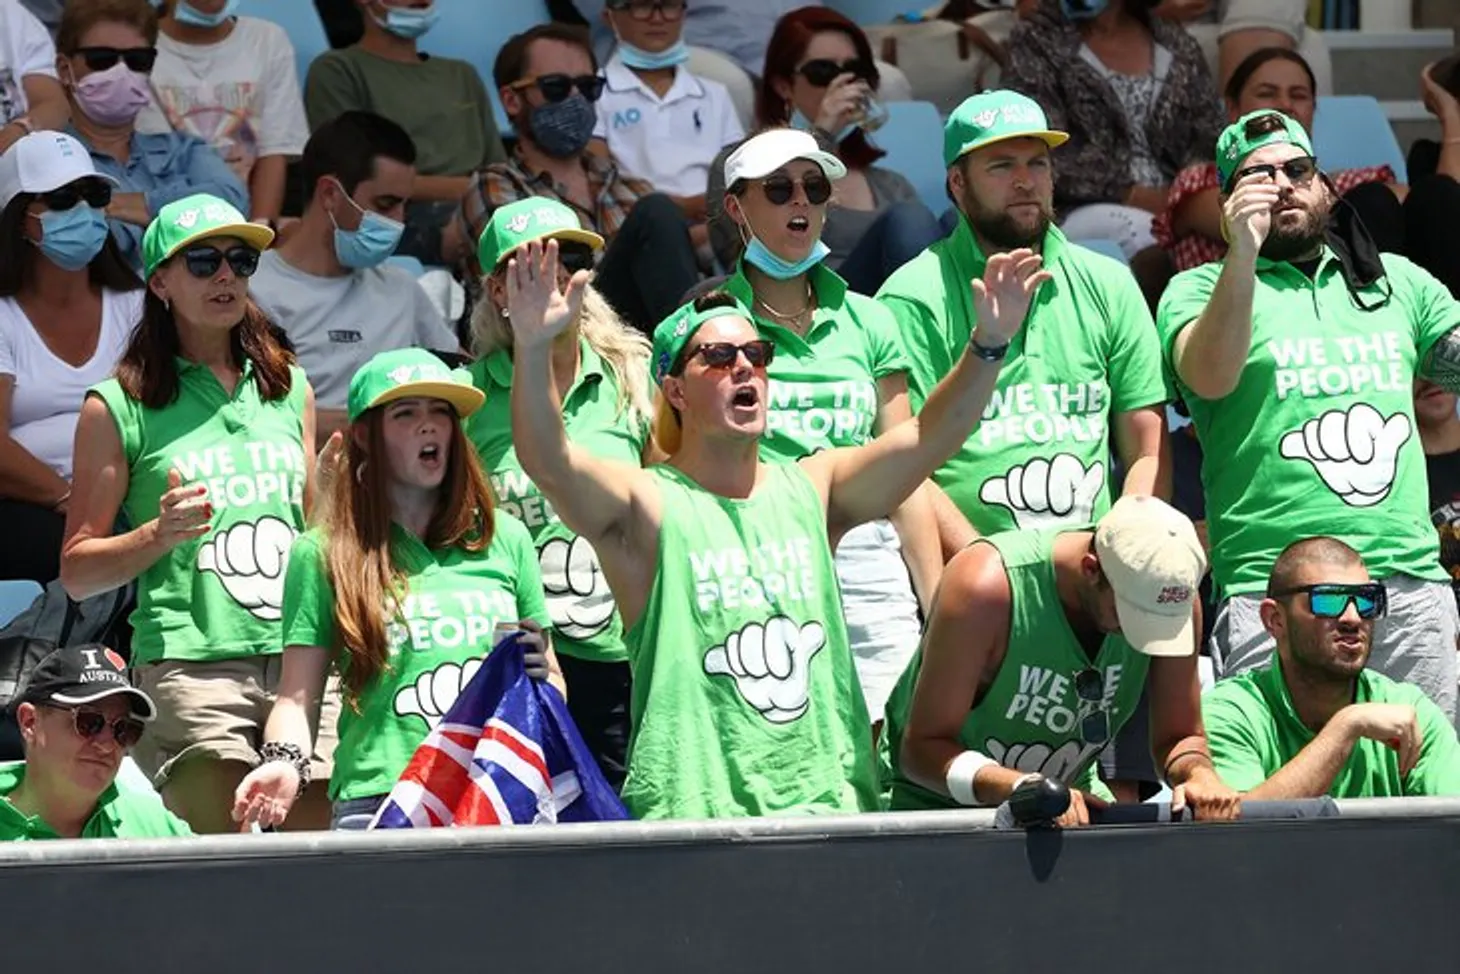 В Австралии узнали, что существует Роналду. Его культовое Siii постоянно звучит на Australian Open и раздражает игроков